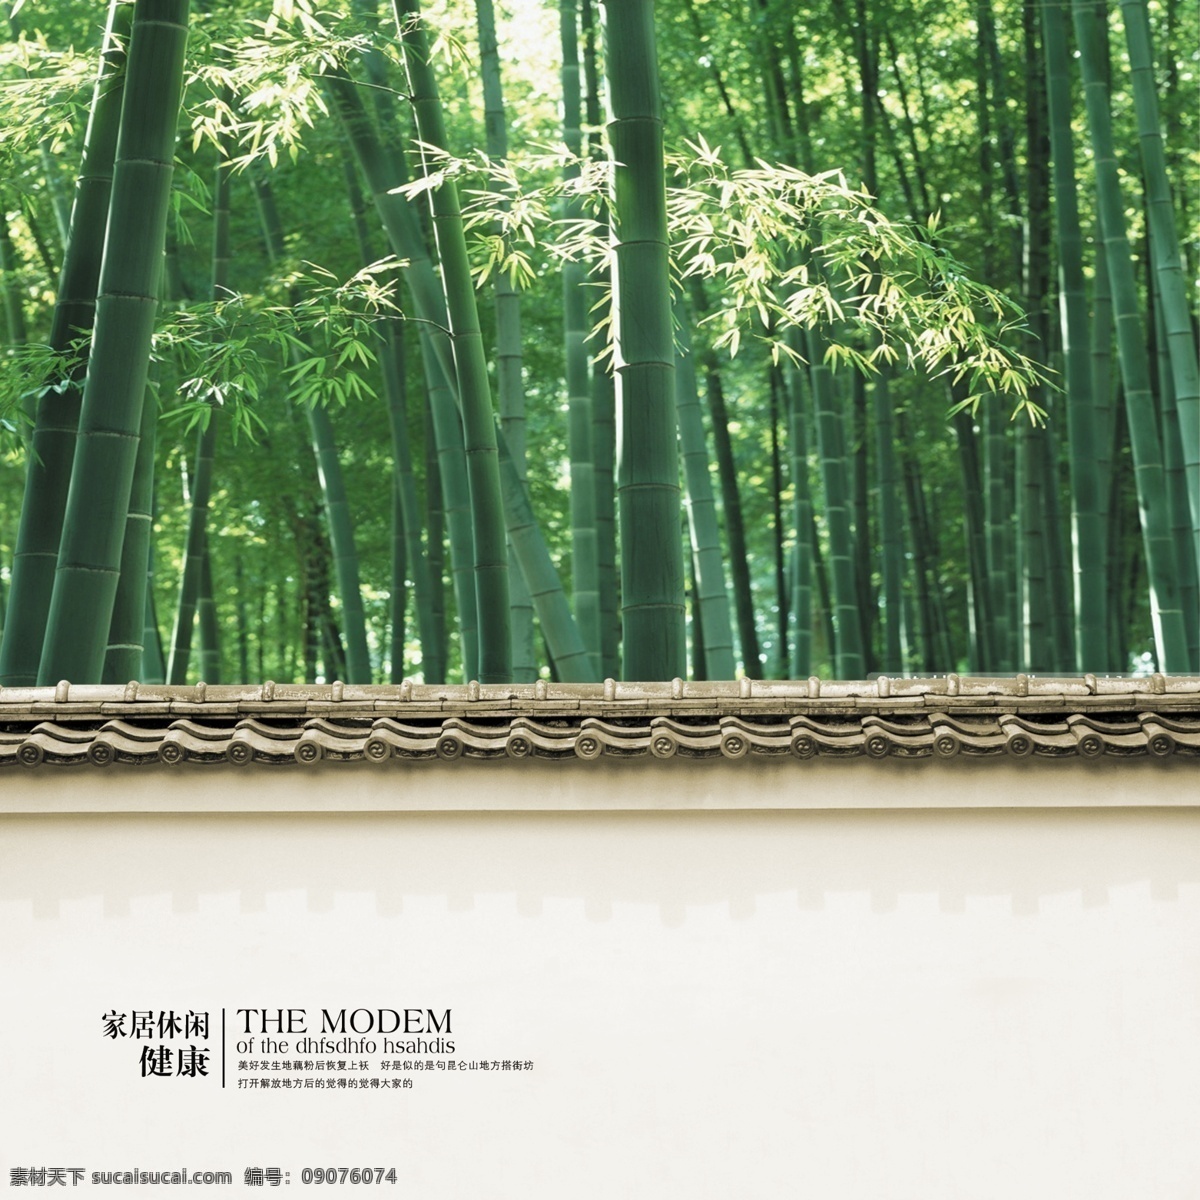 竹子 墙 竹 中国风 中国素材 中国传统 传统素材 中国风水 房产单张 房地产广告 单张 中国风房地产